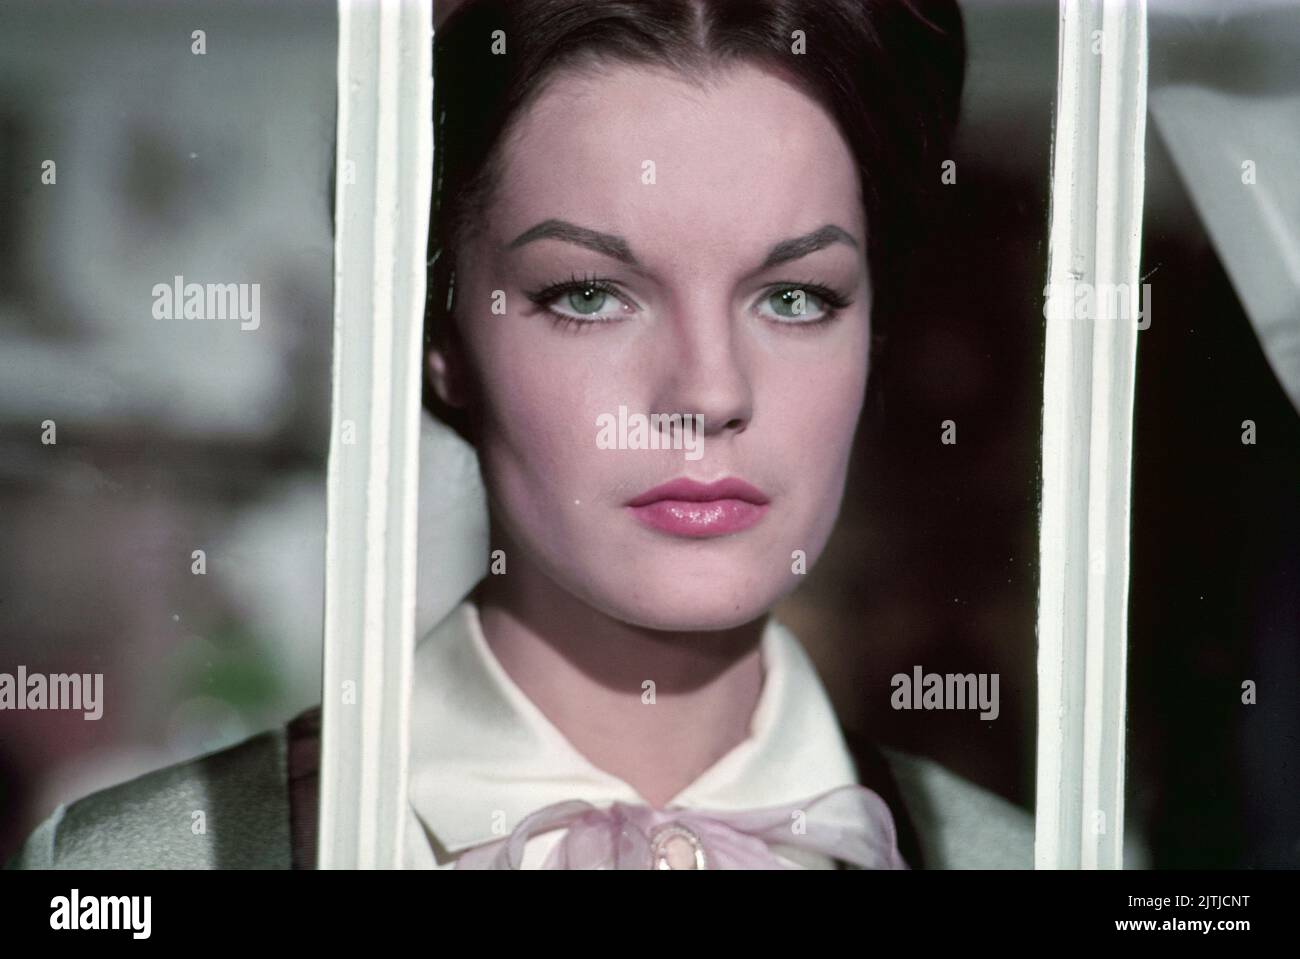 Katia, aka Katja, die ungekrönte Kaiserin, Frankreich 1959, Regie: Robert Siodmak, Darsteller: Romy Schneider Foto de stock